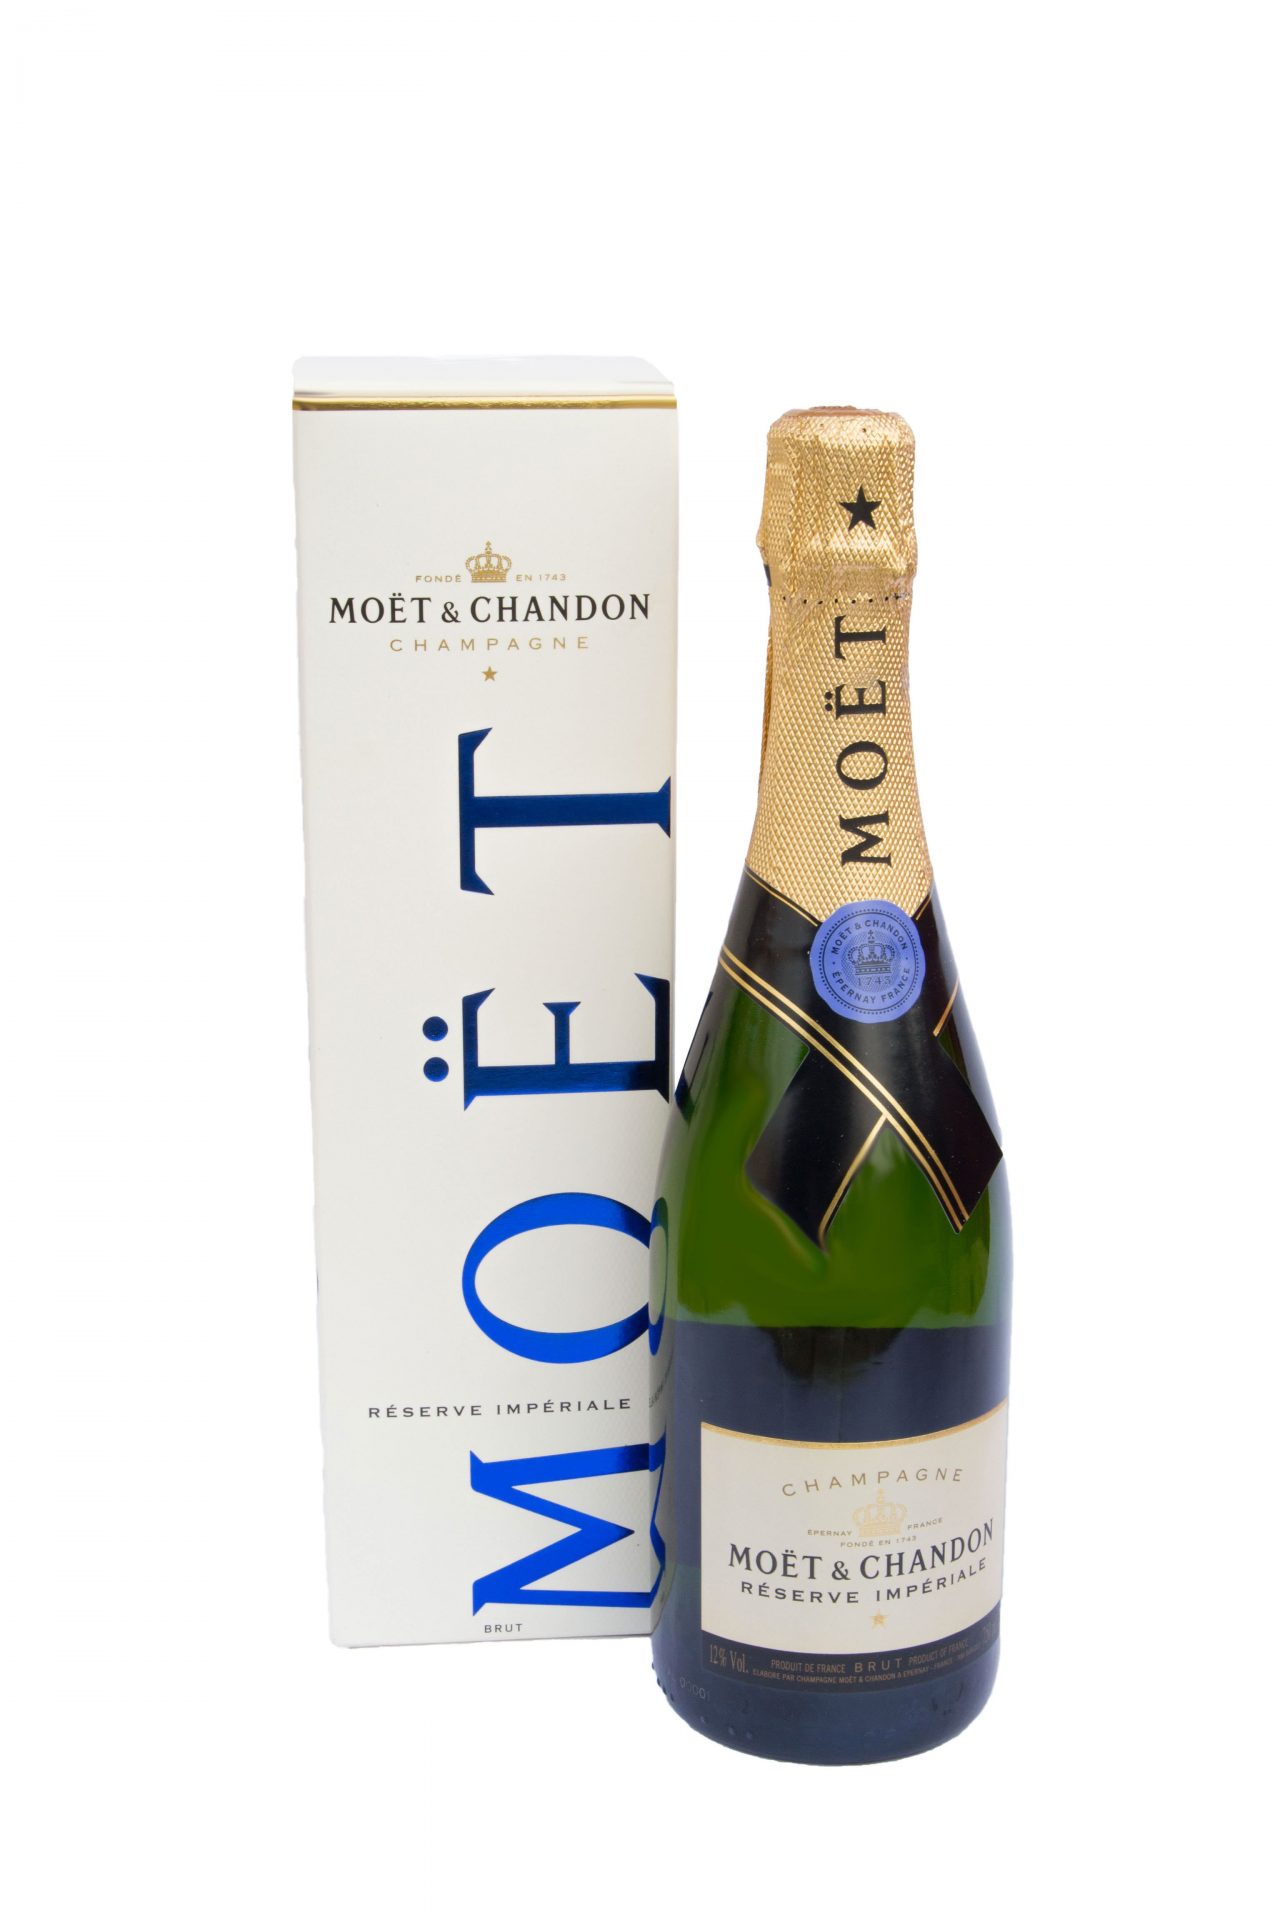 Moët & Chandon – Champagne Brut “Réserve Impériale”